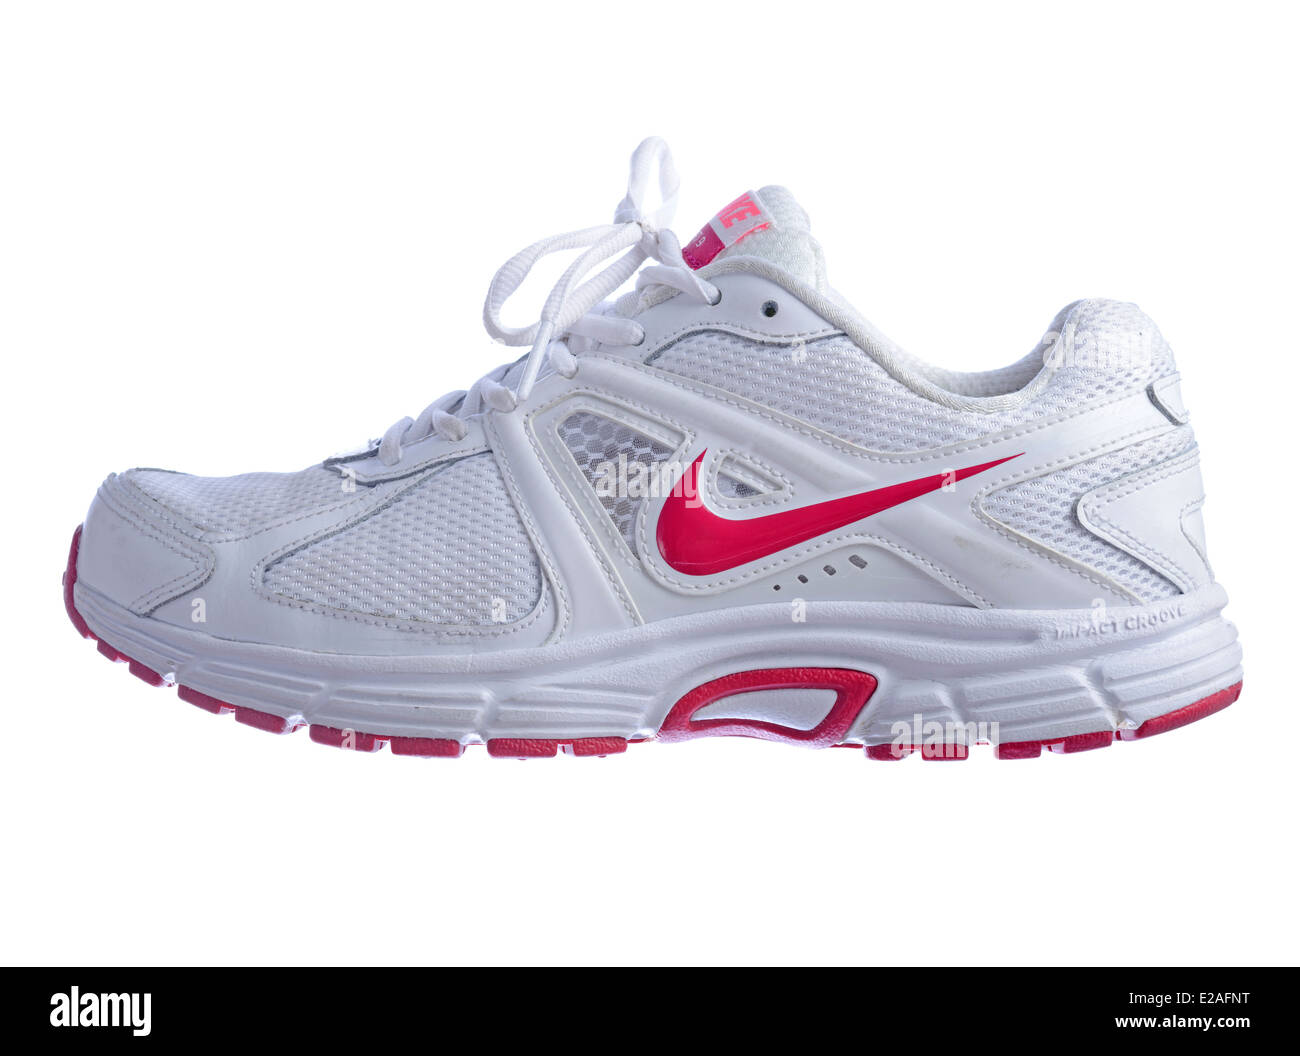 Weiße Nike Dart 9 Laufschuh mit rosa Logo isoliert auf weißem Hintergrund  Stockfotografie - Alamy